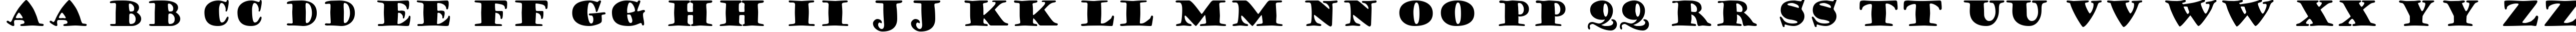 Пример написания английского алфавита шрифтом Goudy Stout